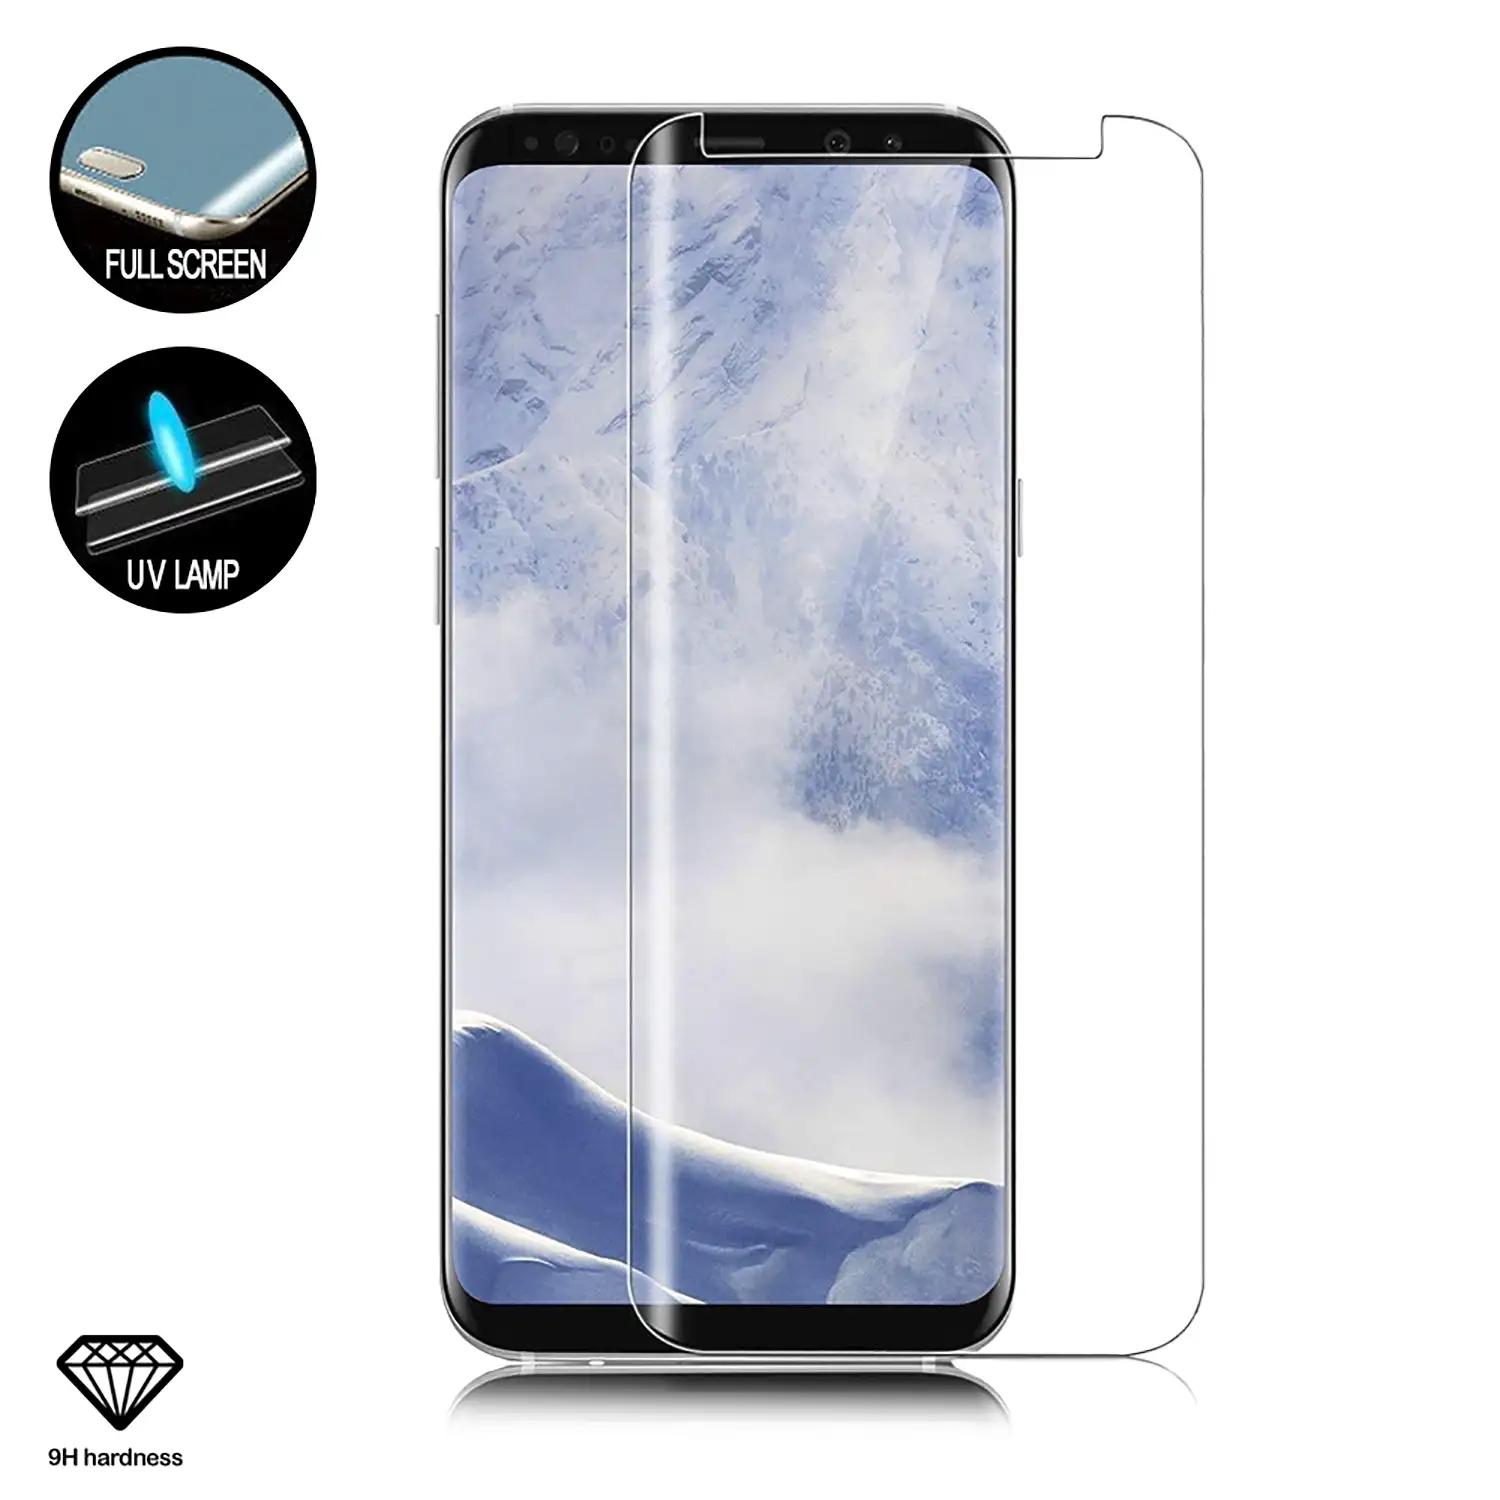 Protector de cristal templado Premium de pantalla completa curva 4D con accesoriOS de instalación para Samsung S9 Plus